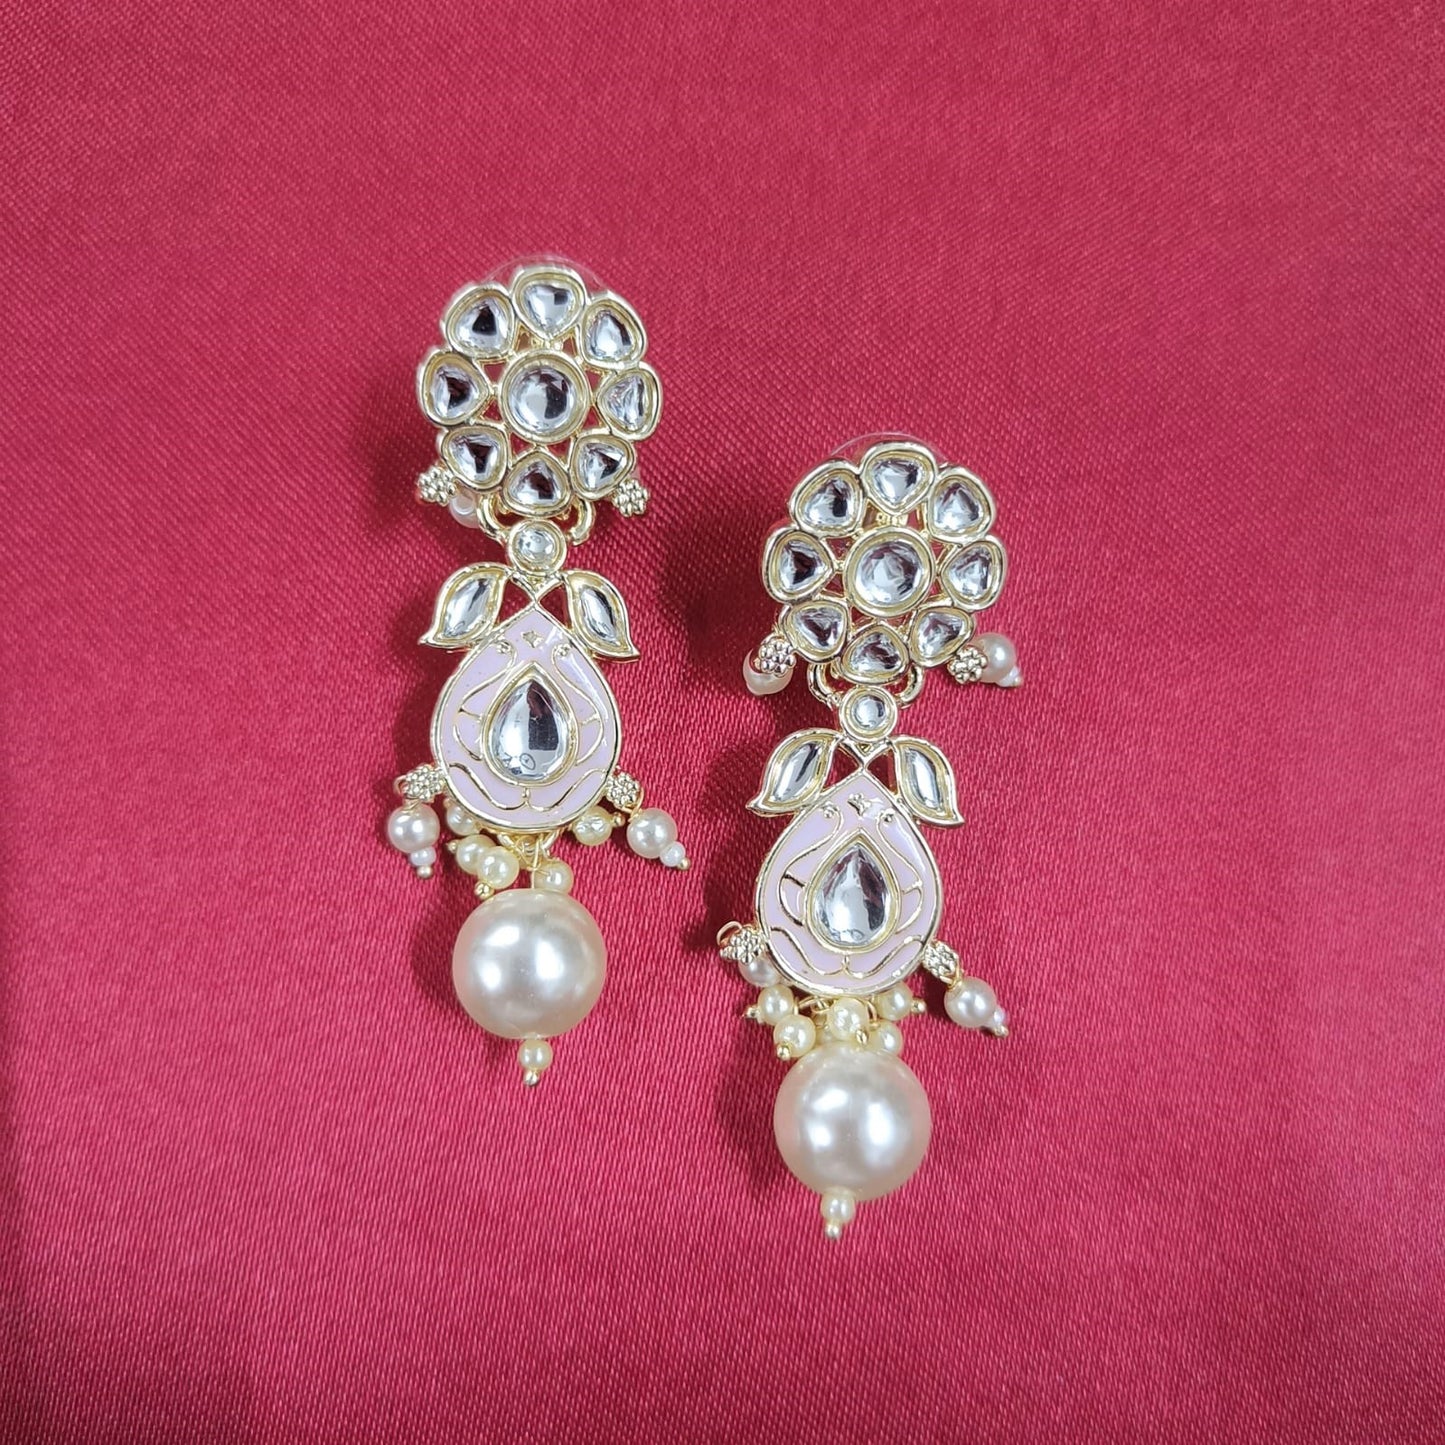 Bdiva 18K Gold Plated Pink Kundan Meenakari Drop Earrings with Semi Cultured Pearls.